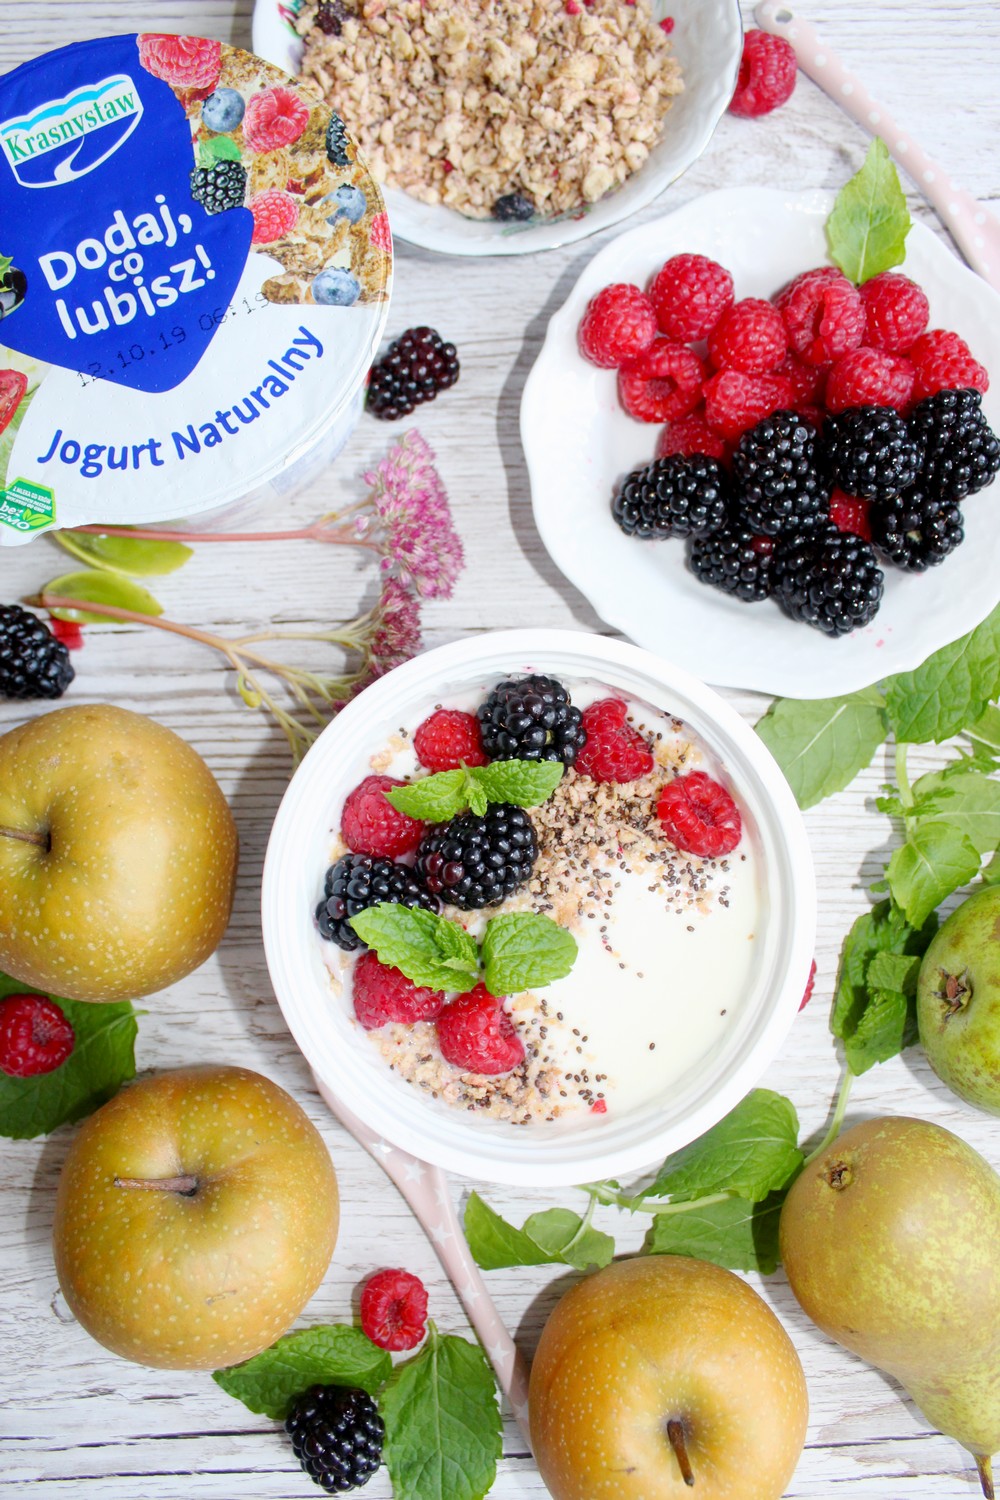 Moje ulubione śniadanie - Jogurt naturalny Dodaj, co lubisz!